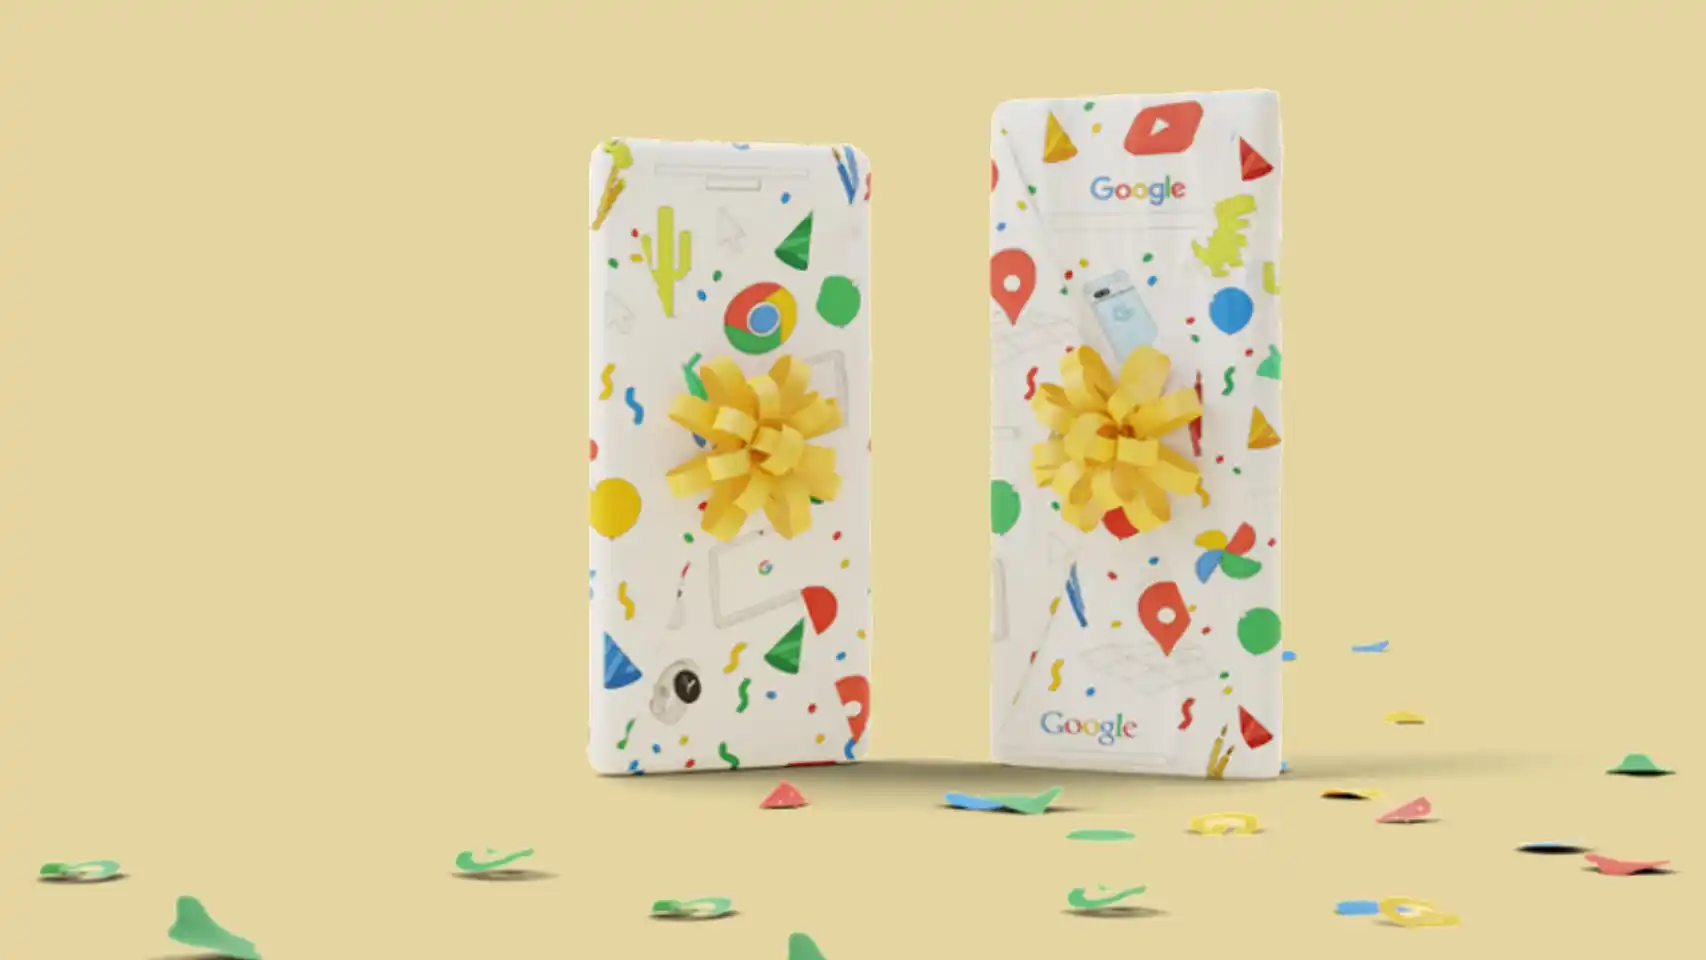 Imagen referencial de dos regalos de Google relacionados con Google Pixel.